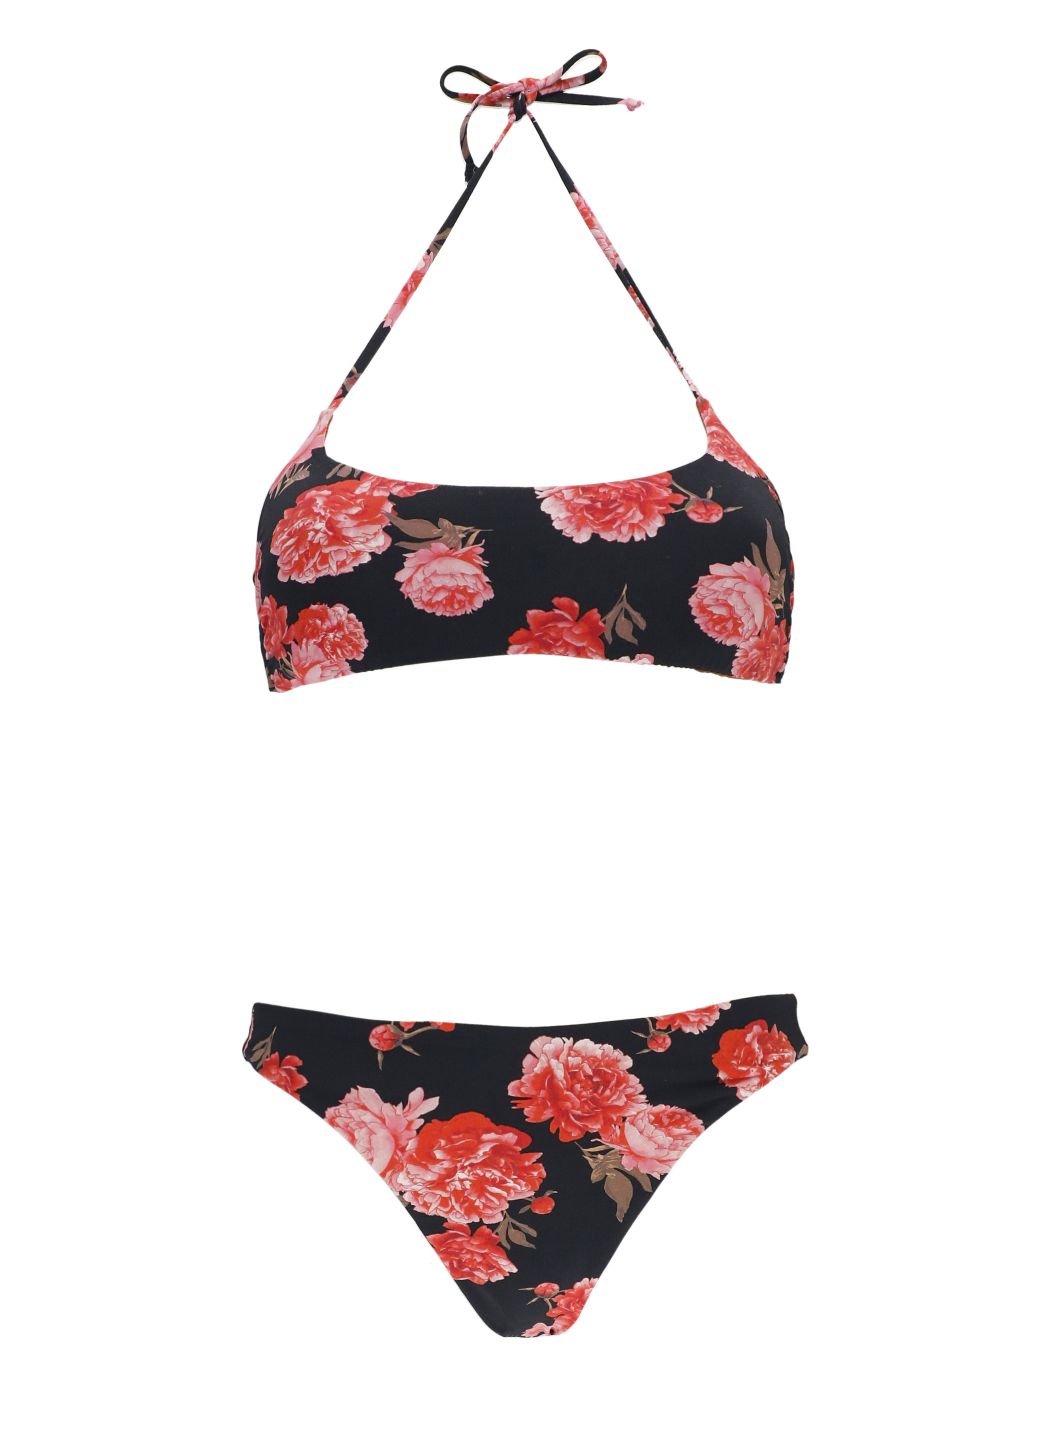 Bikini with floral pattern